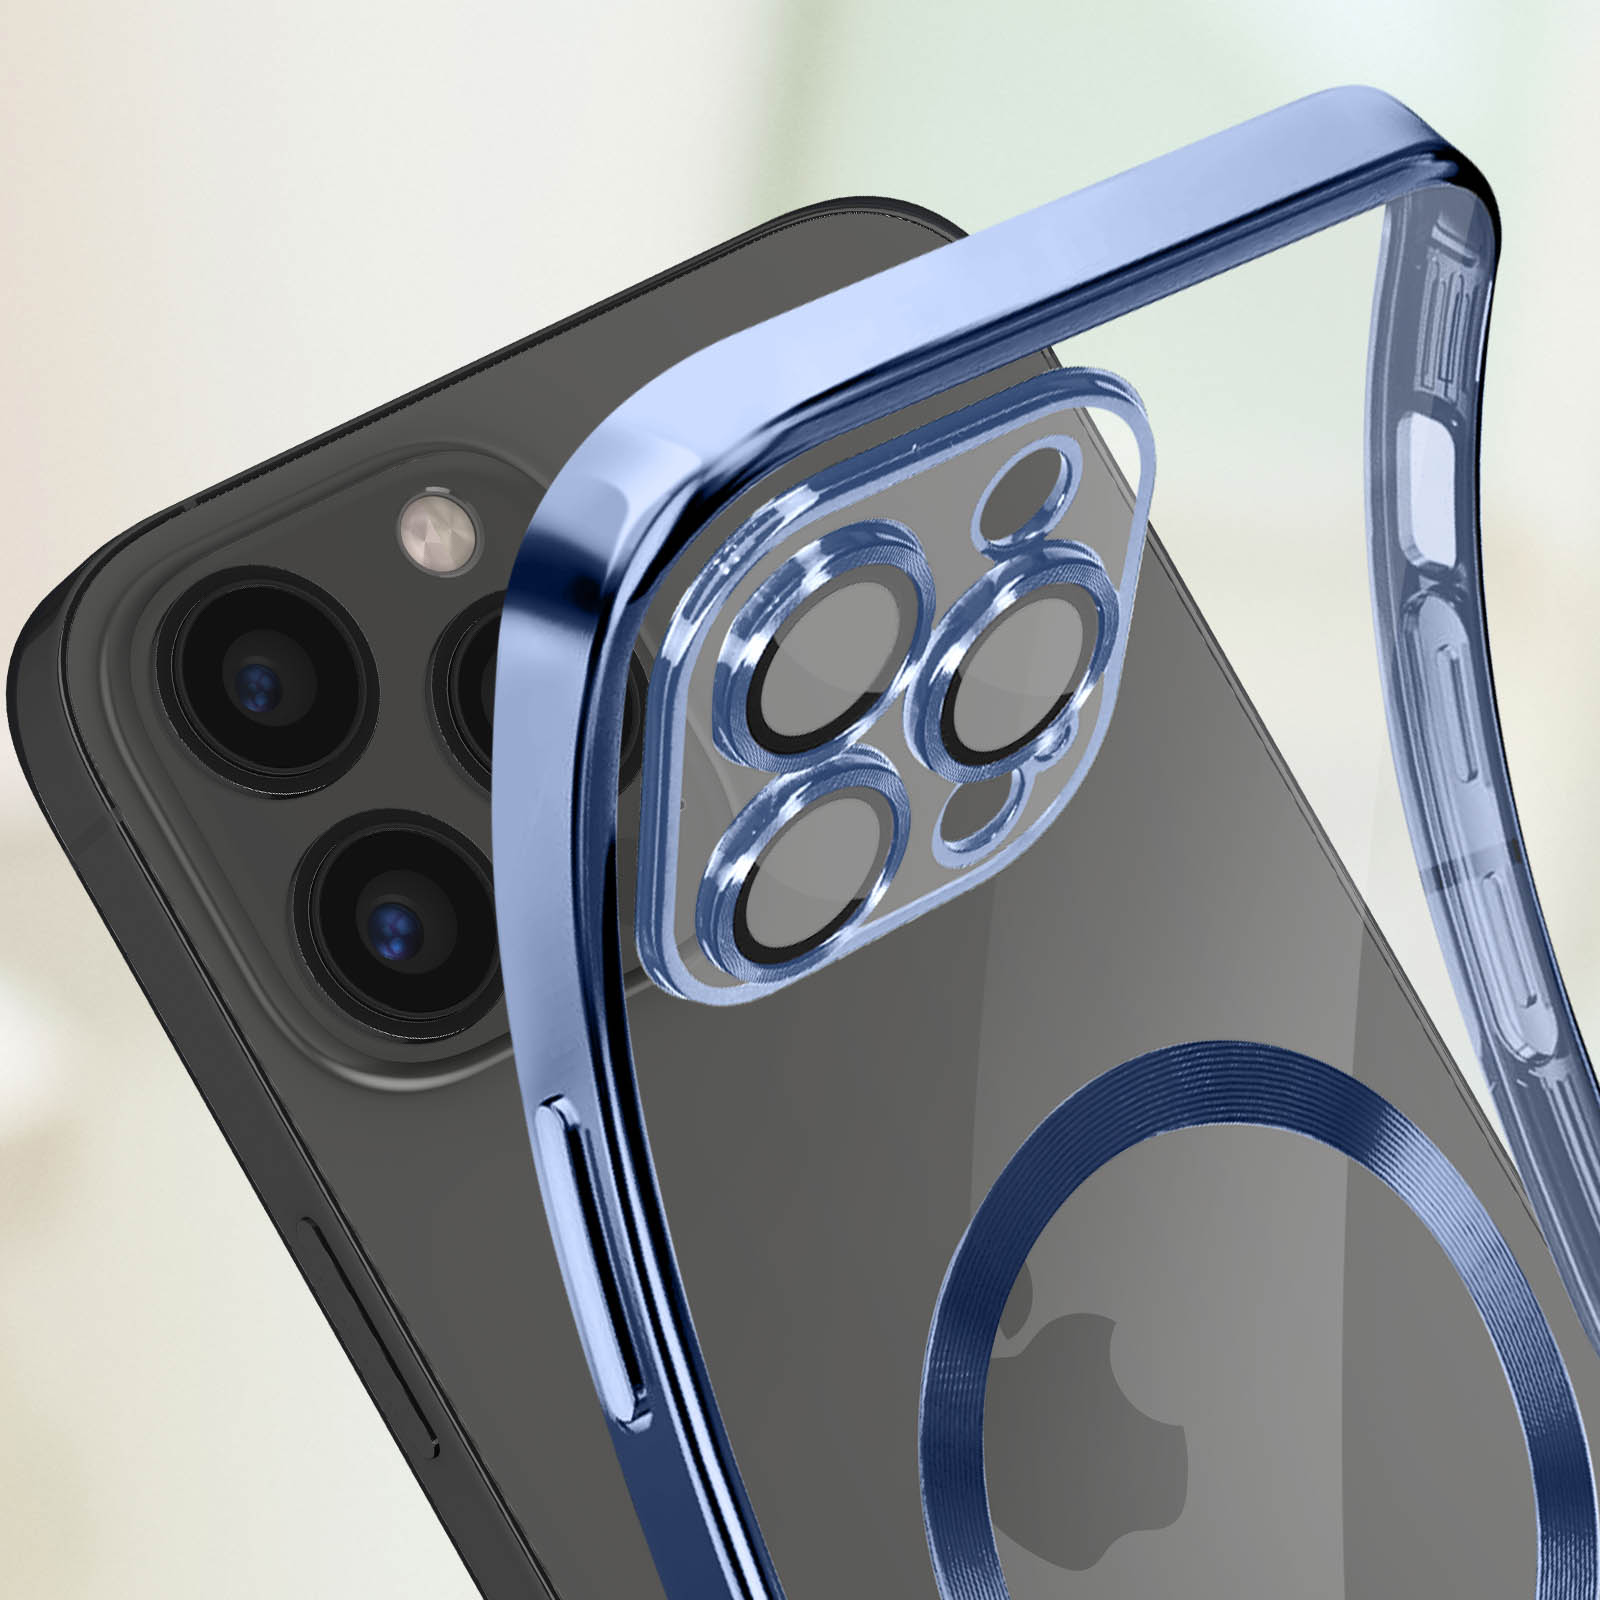 Apple Coque en silicone avec MagSafe pour iPhone 13 - Bleu clair